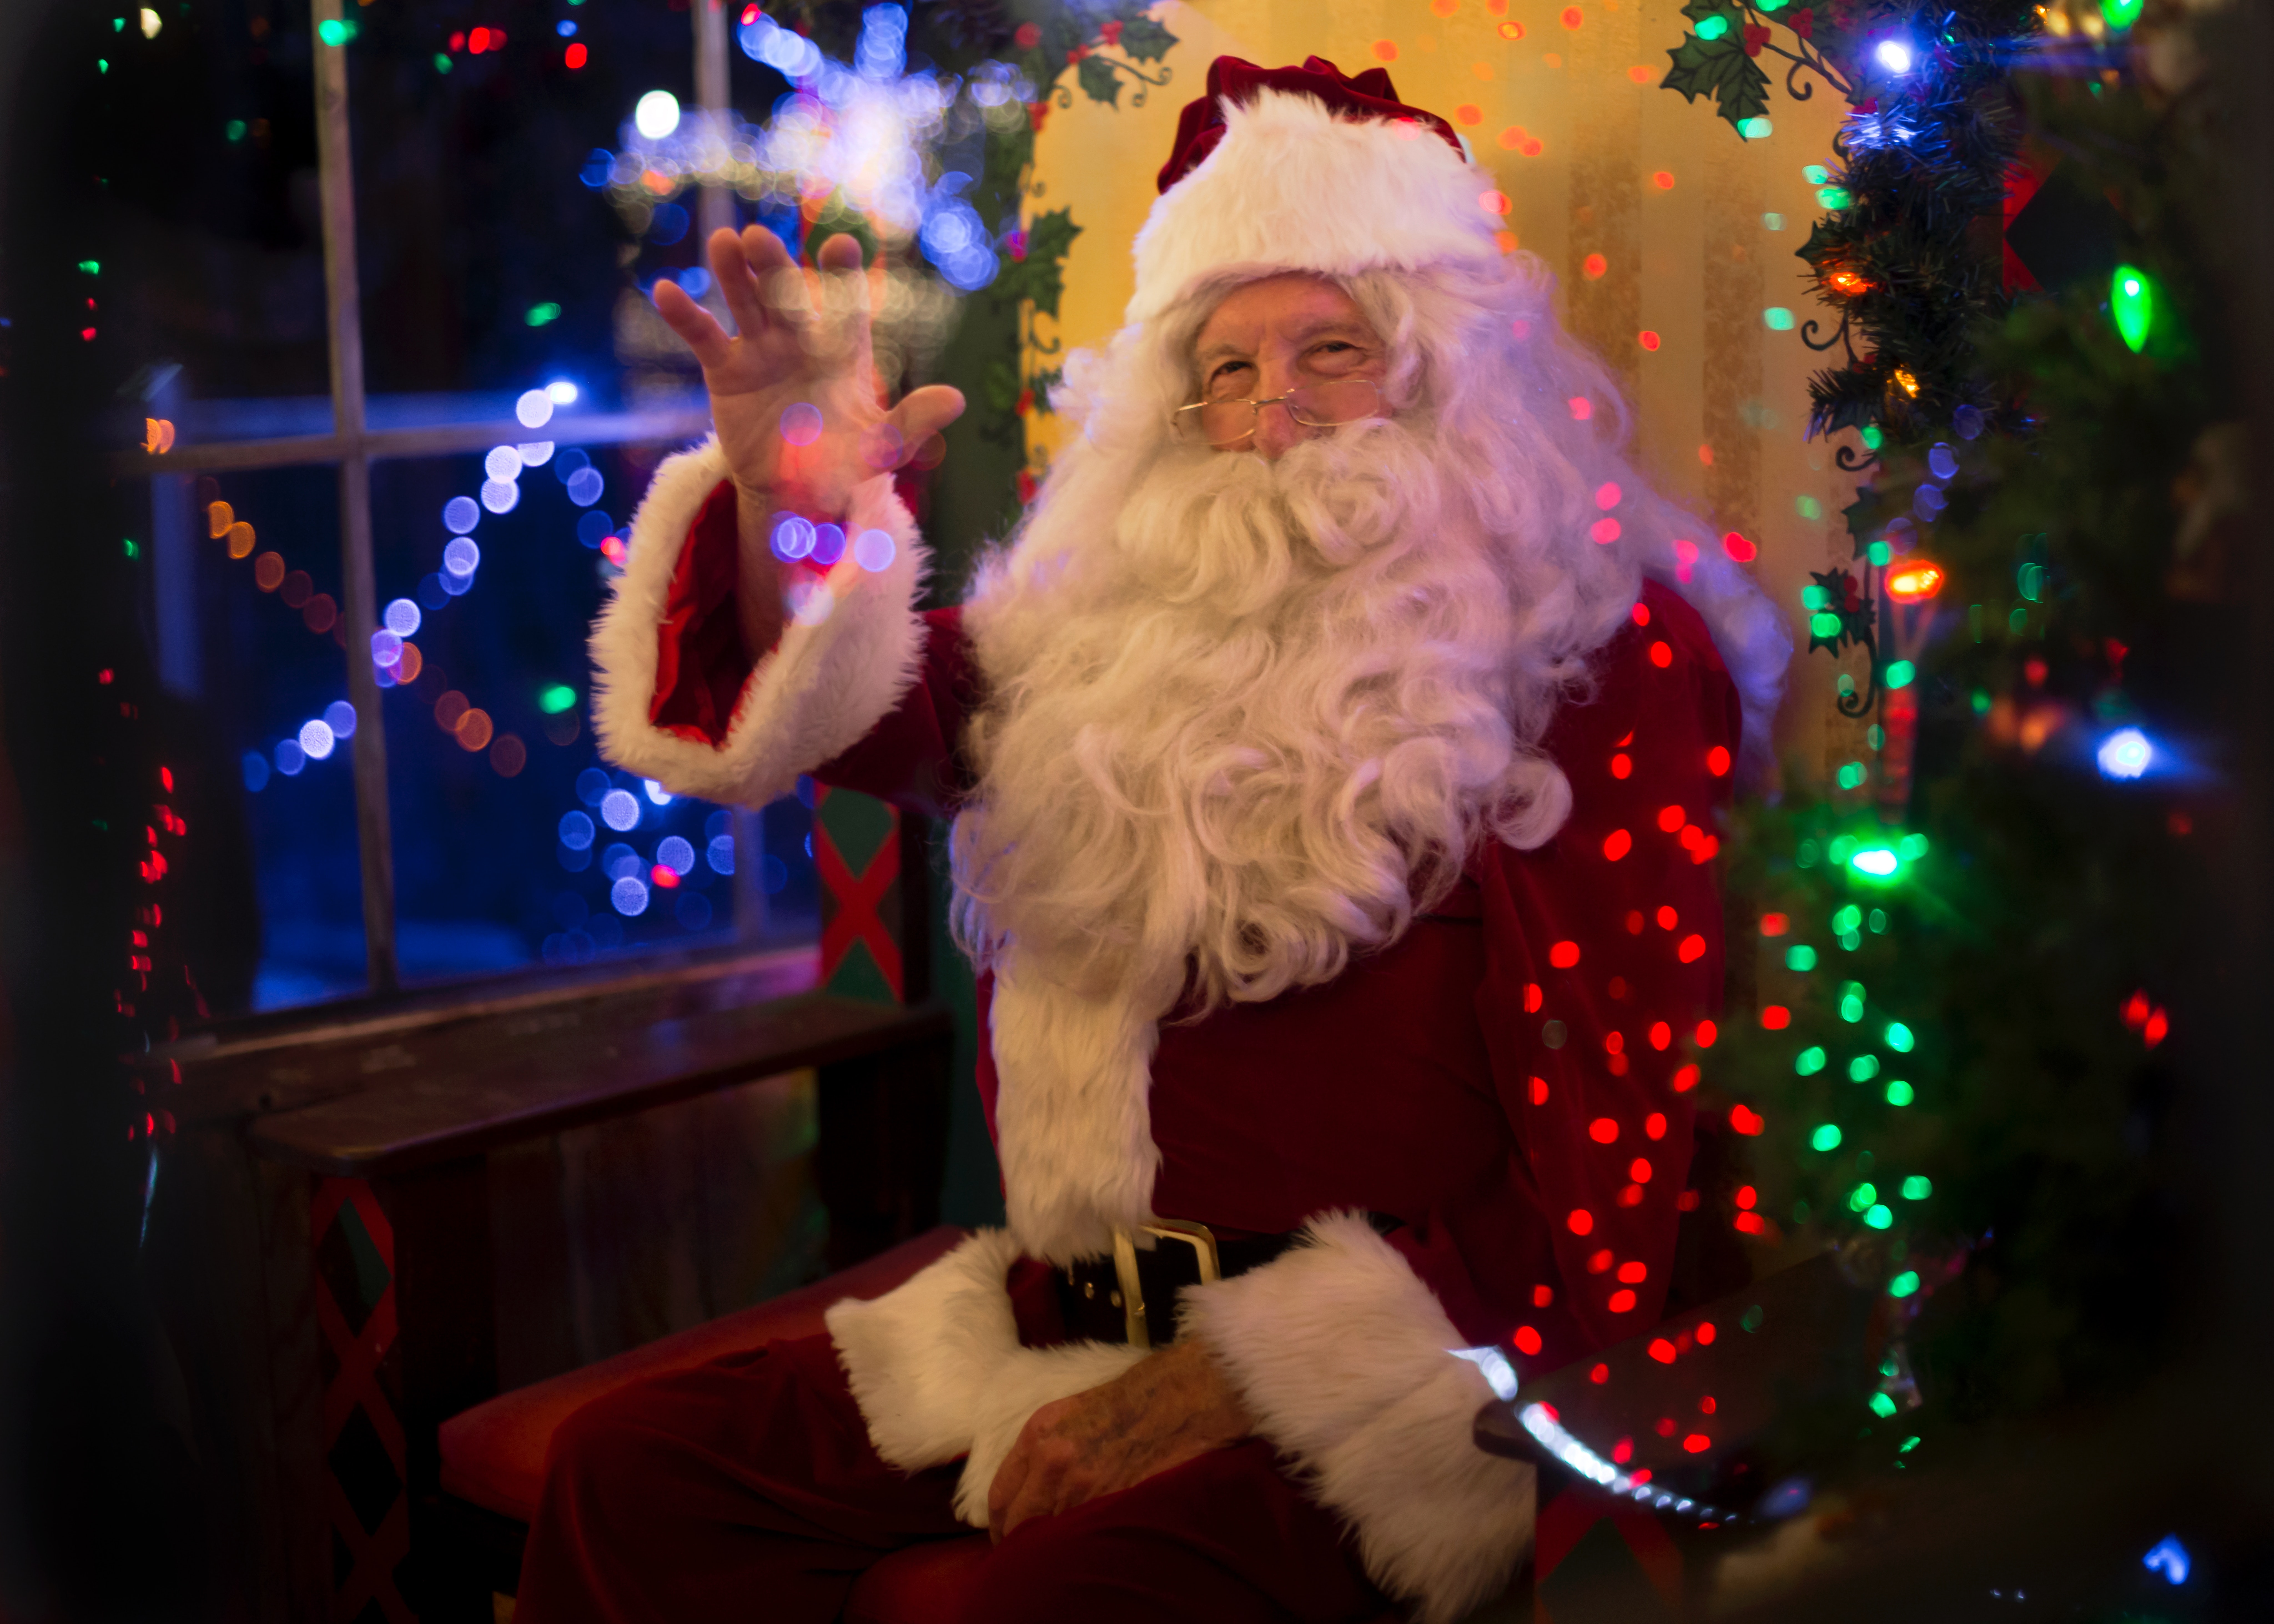 Santa Clause waving his hand